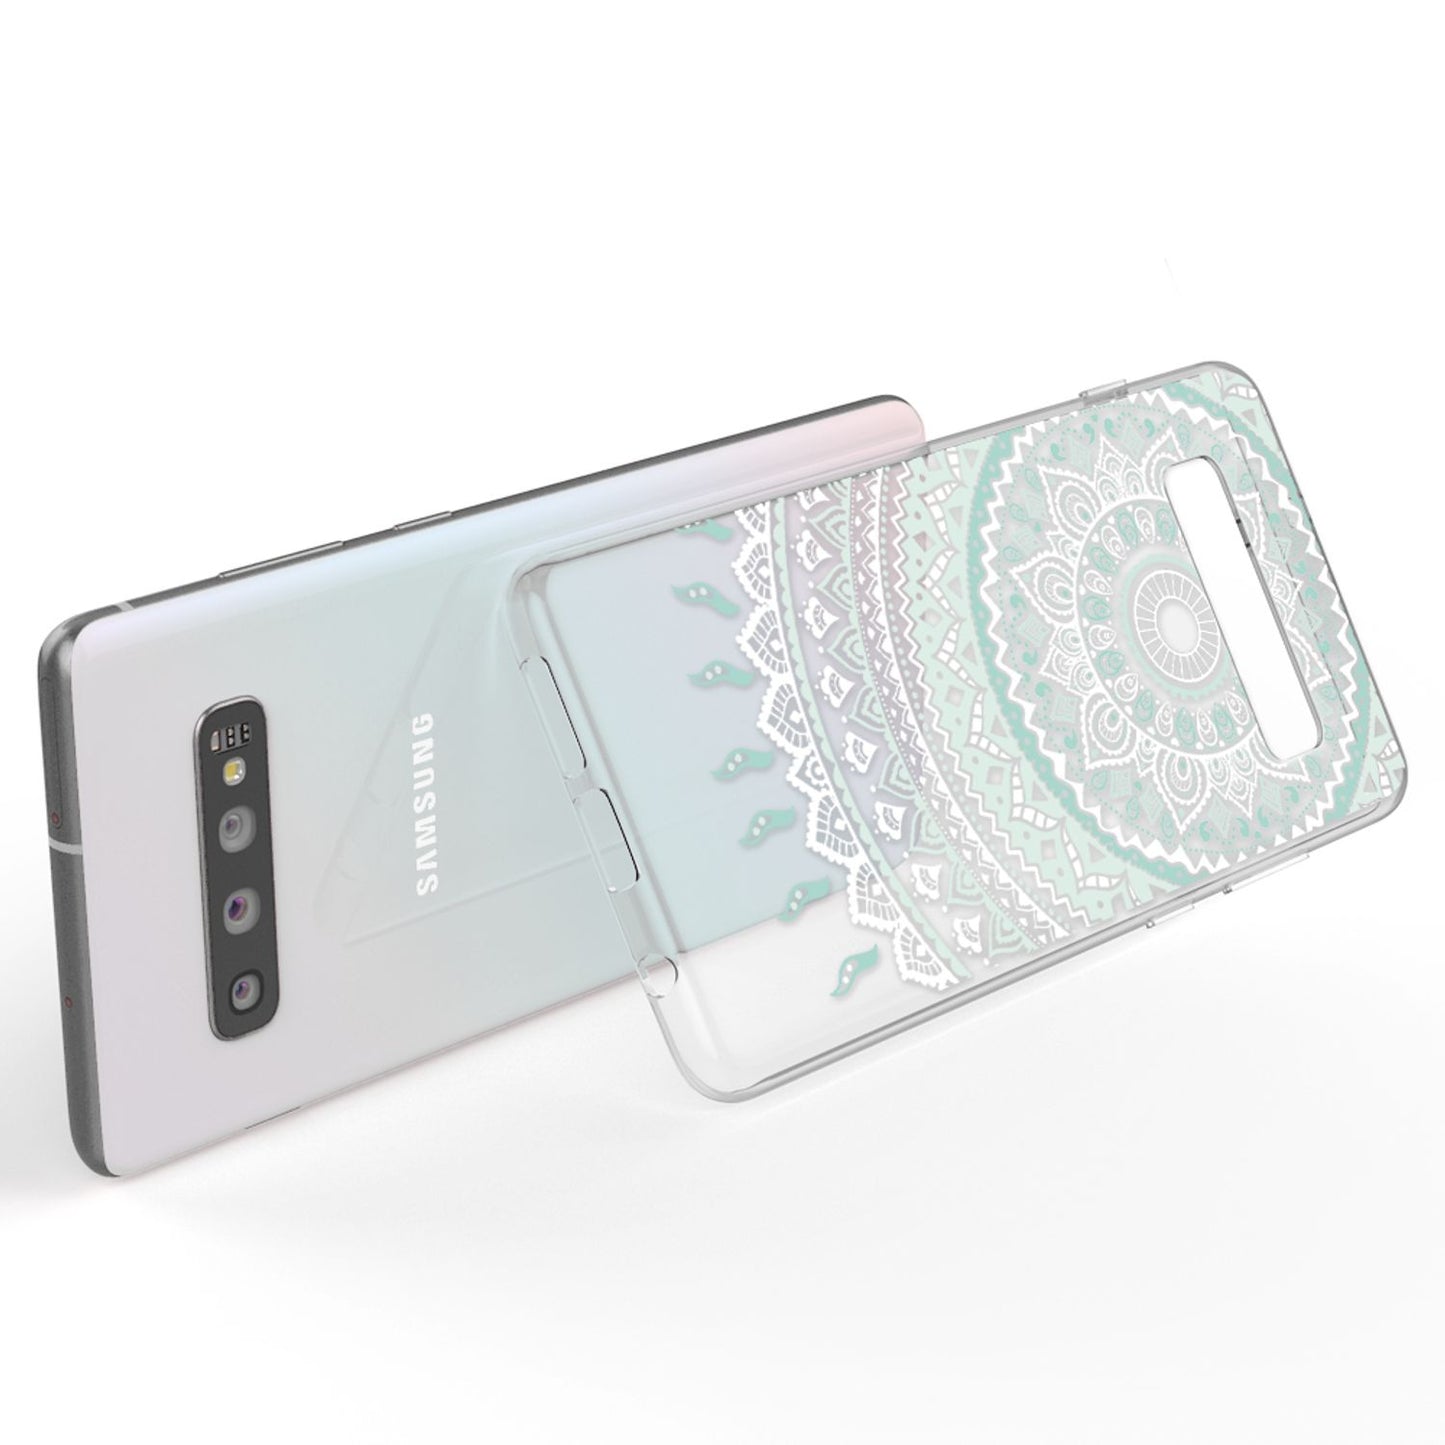 NALIA Hülle für Samsung Galaxy S10, Motiv Handyhülle Silikon Case Schutz Cover